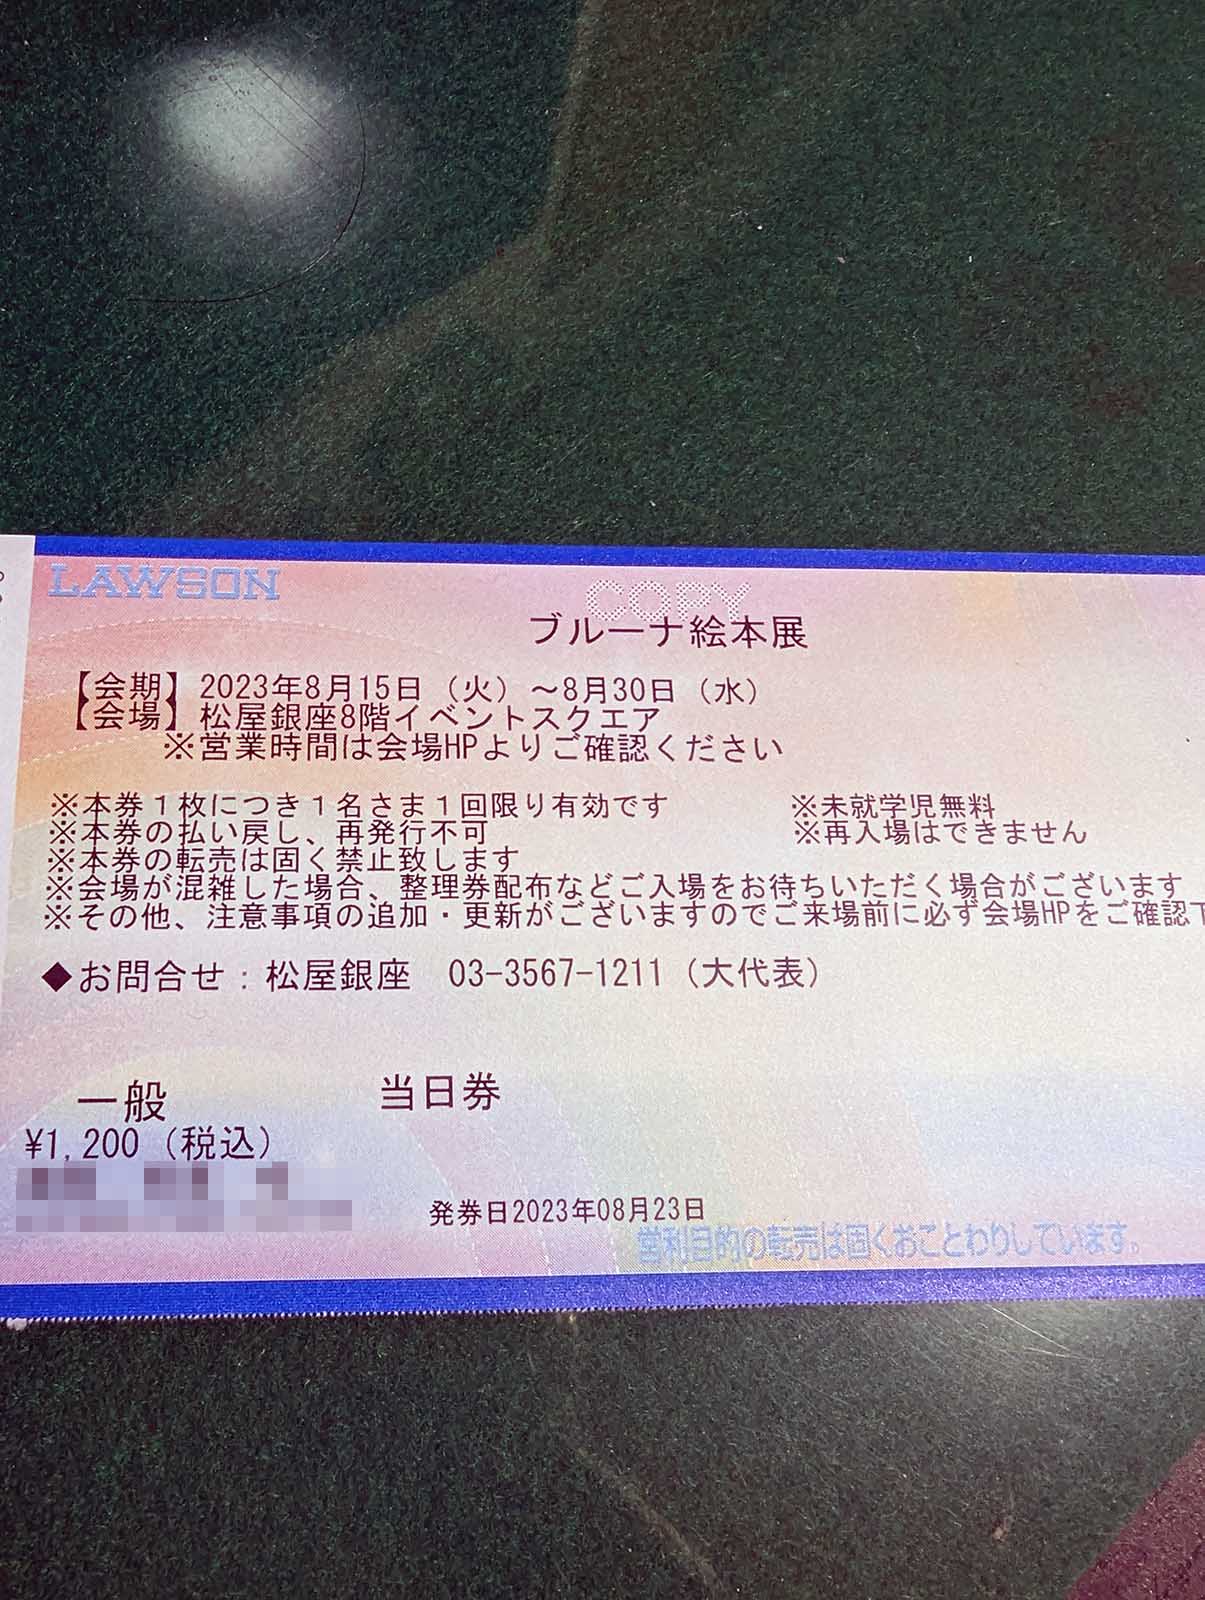 チケットの発券